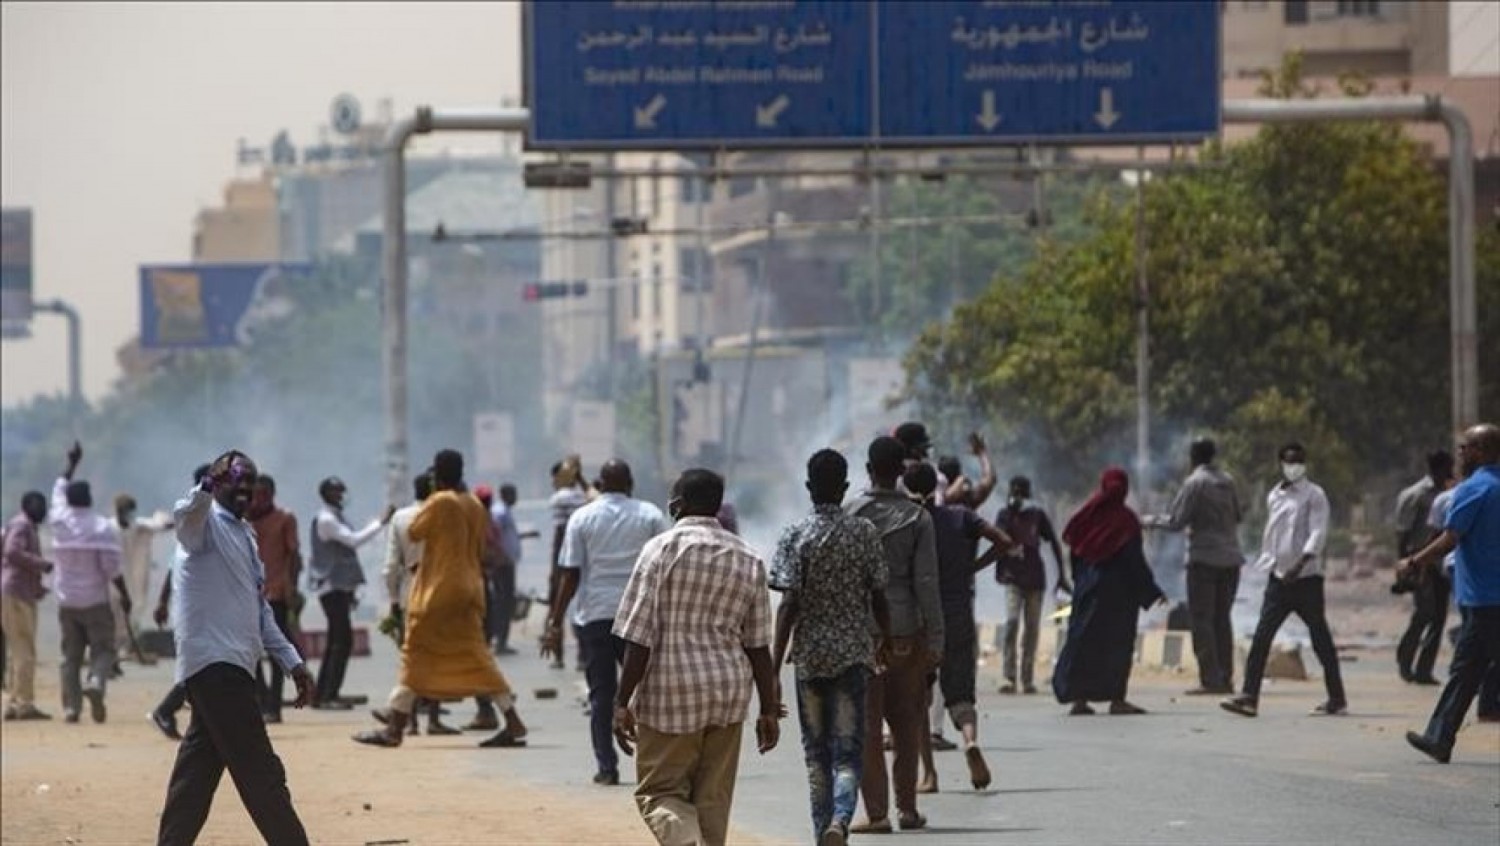 Côte d'Ivoire : 47 ivoiriens en situation difficile au Soudan rapatriés de Khartoum à destination du Caire en attendant leur retour au pays